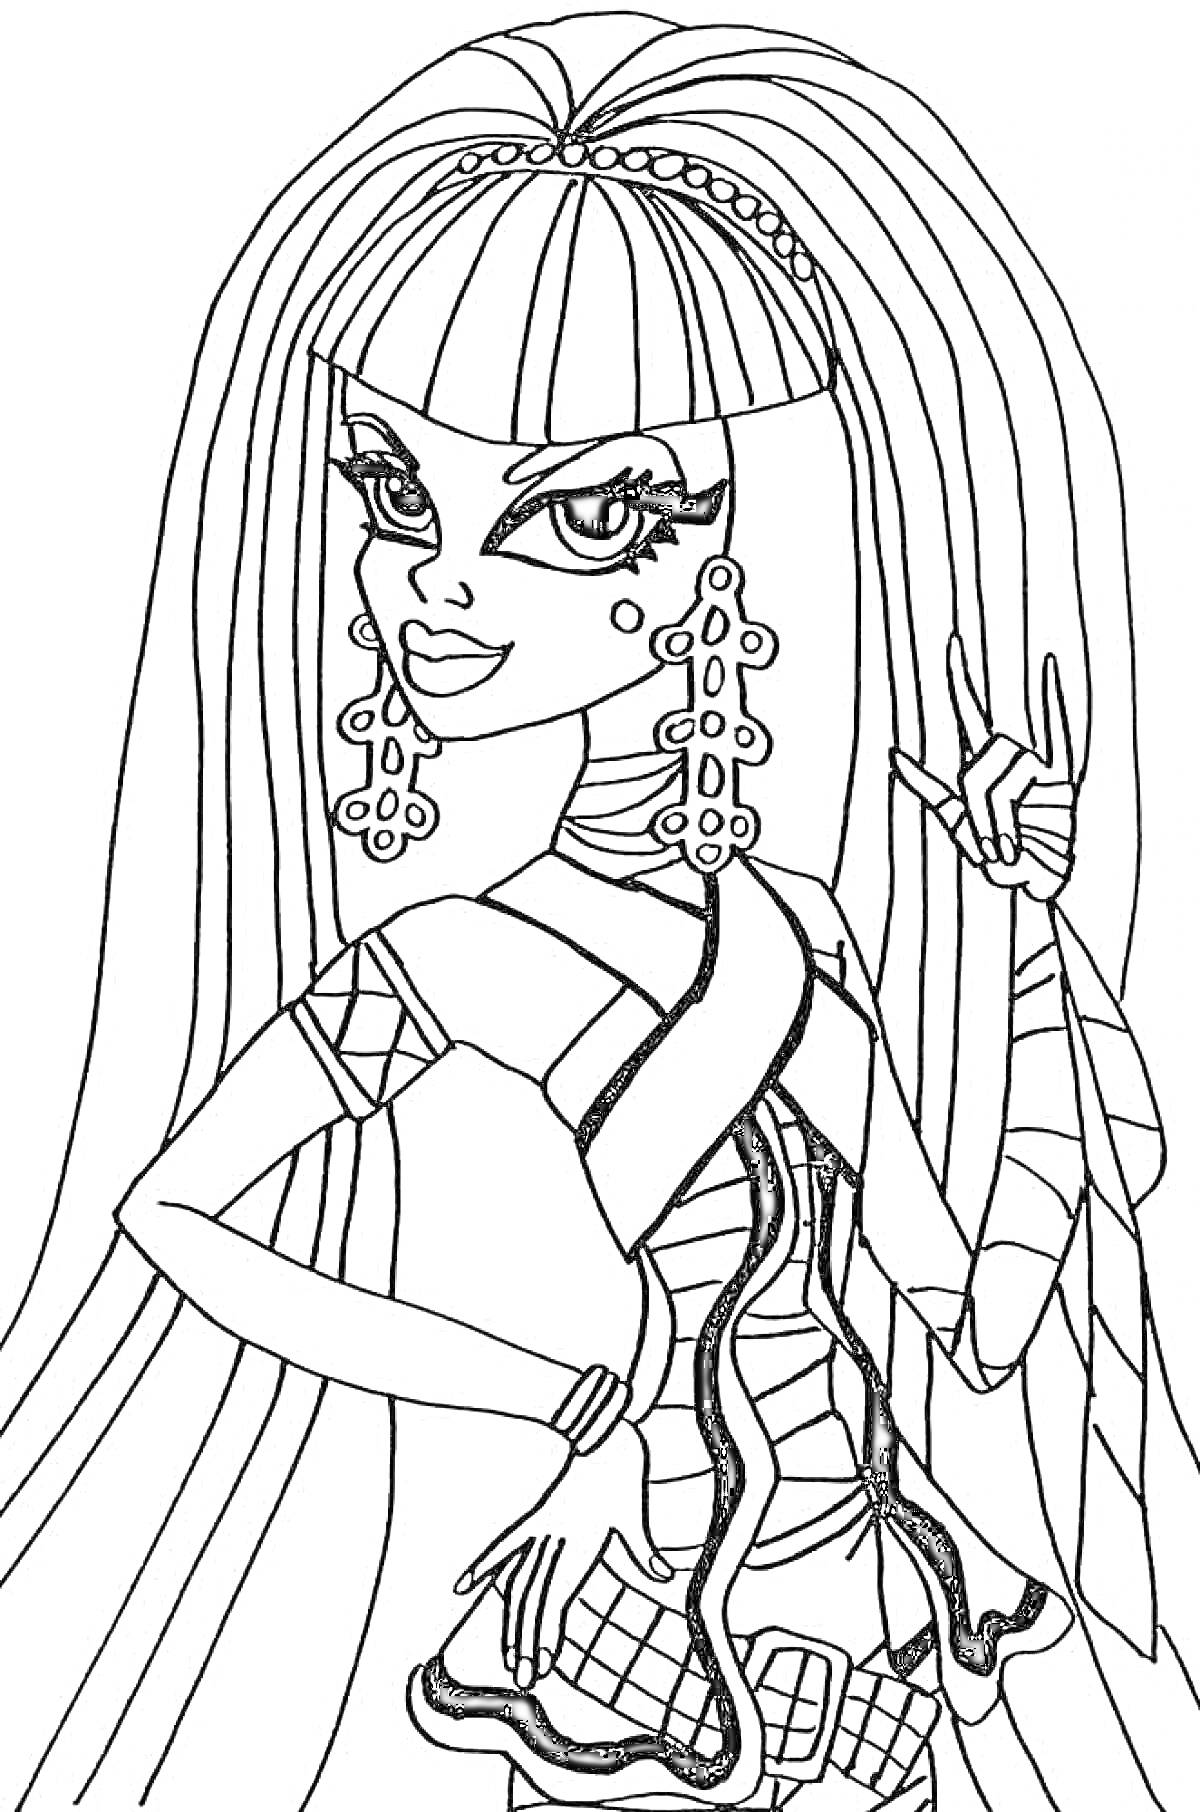 Монстр Хай - девушка с длинными волосами и крупными серьгами, в наряде с мумификацией и плетением, со сложными аксессуарами